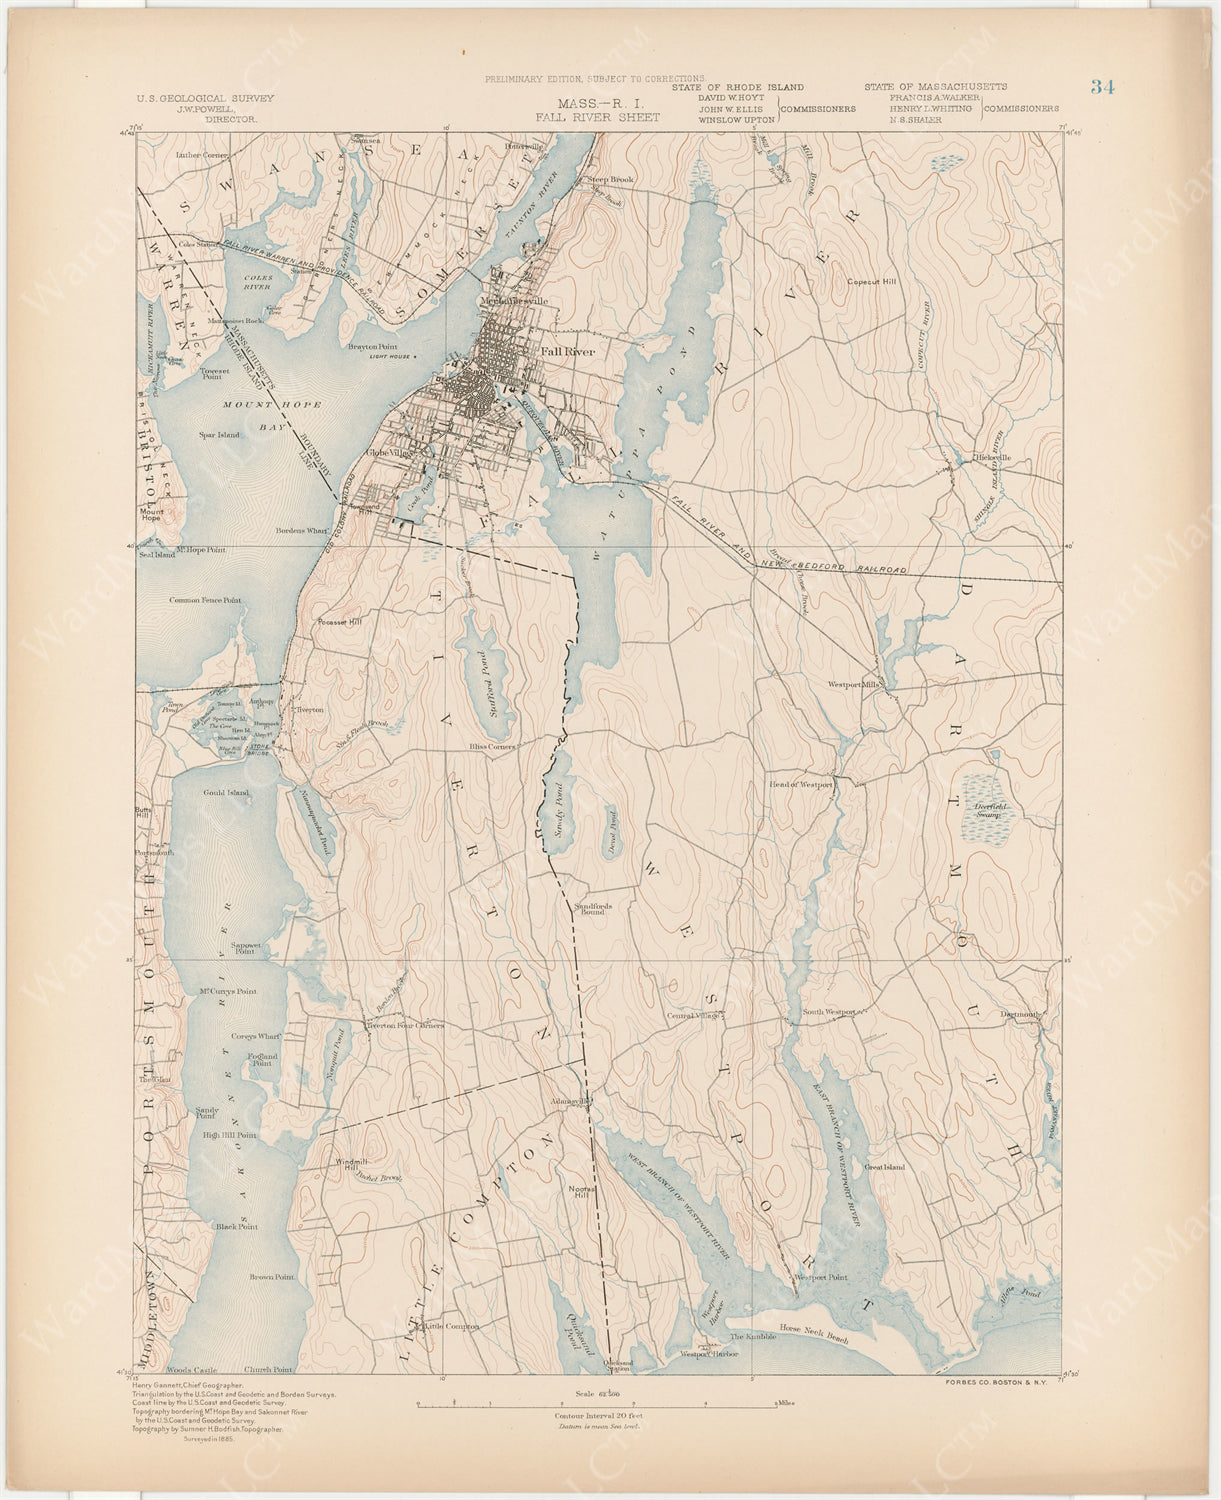 USGS Massachusetts 1890 Plate 034: Fall River Sheet